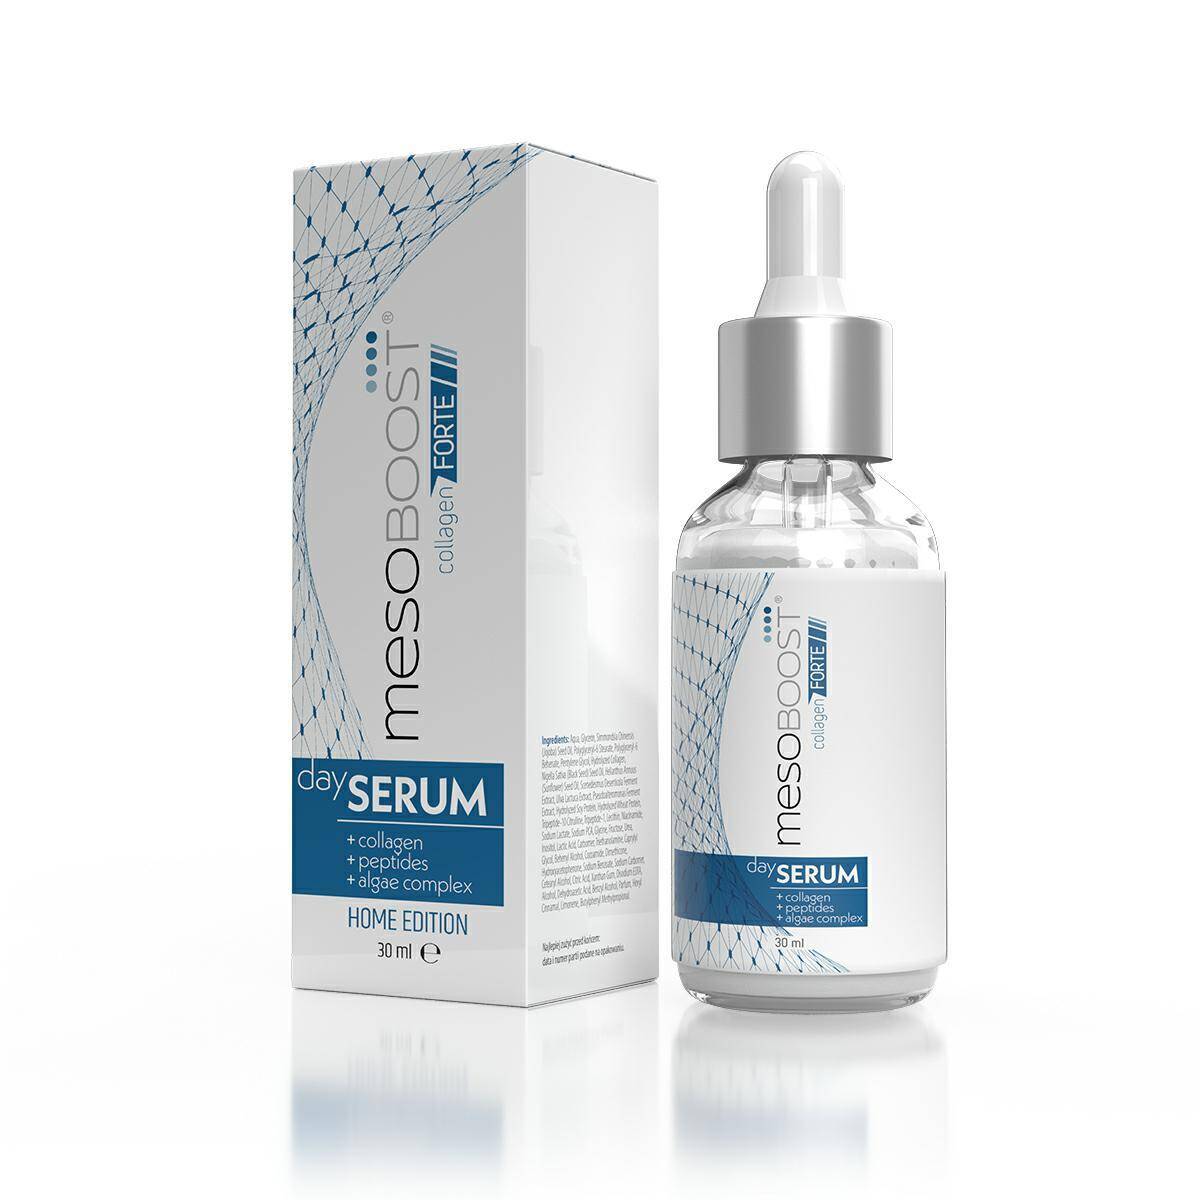 mesoBOOST ® Collagen Forte day serum